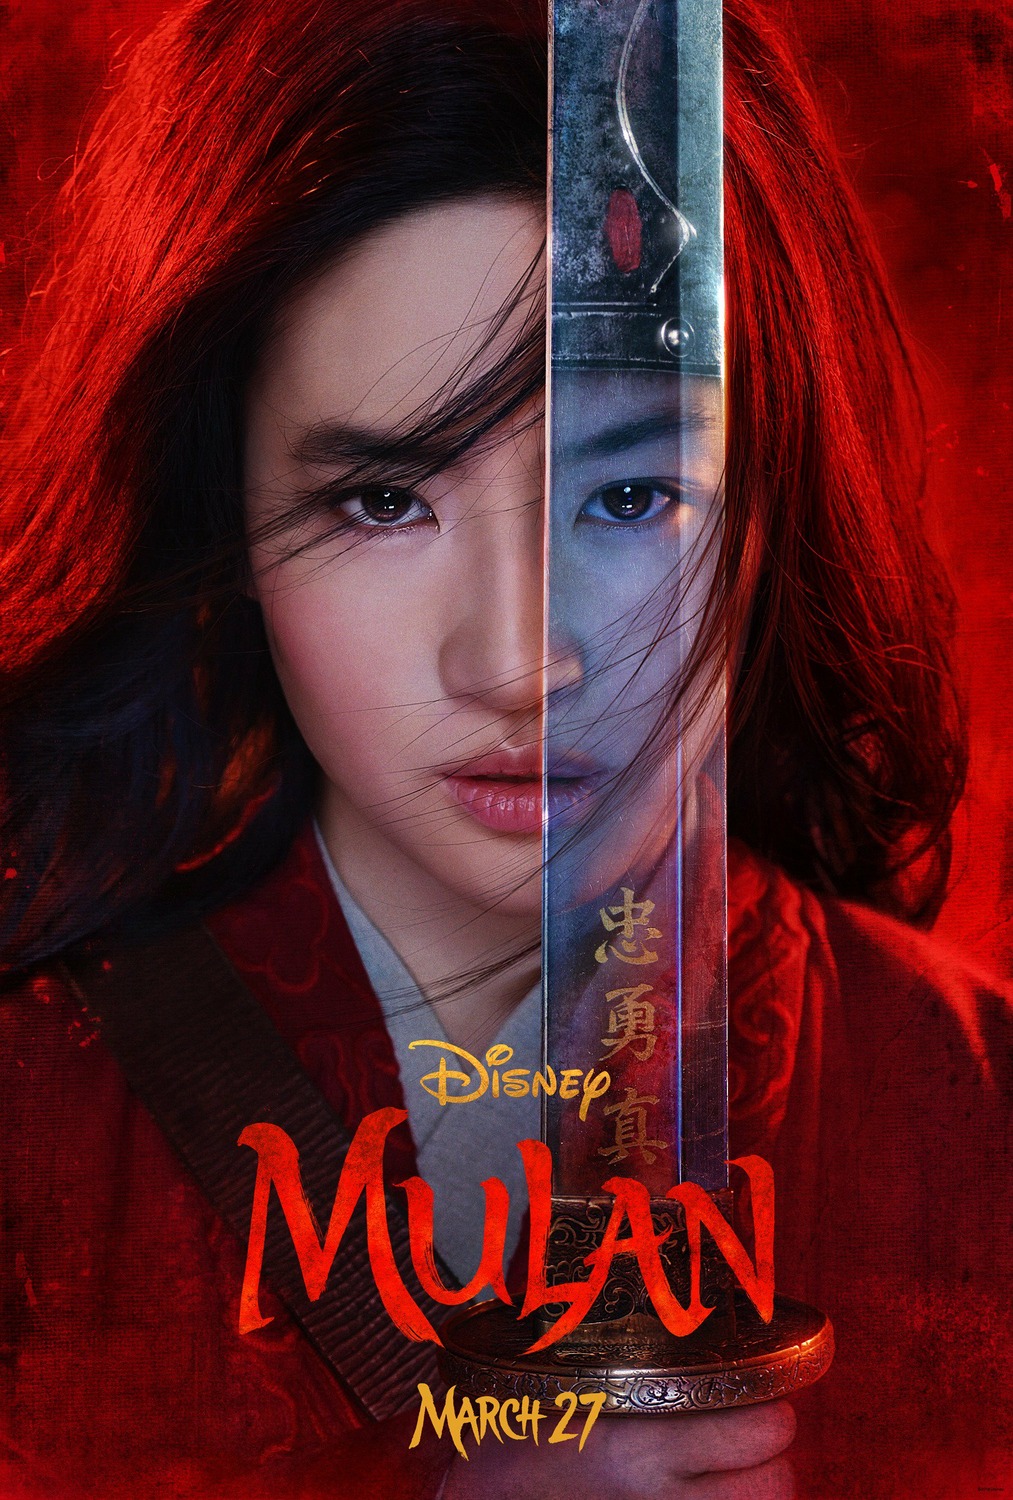 Mulan/Mulan 2 | DVD | Free shipping over £20 | HMV Store